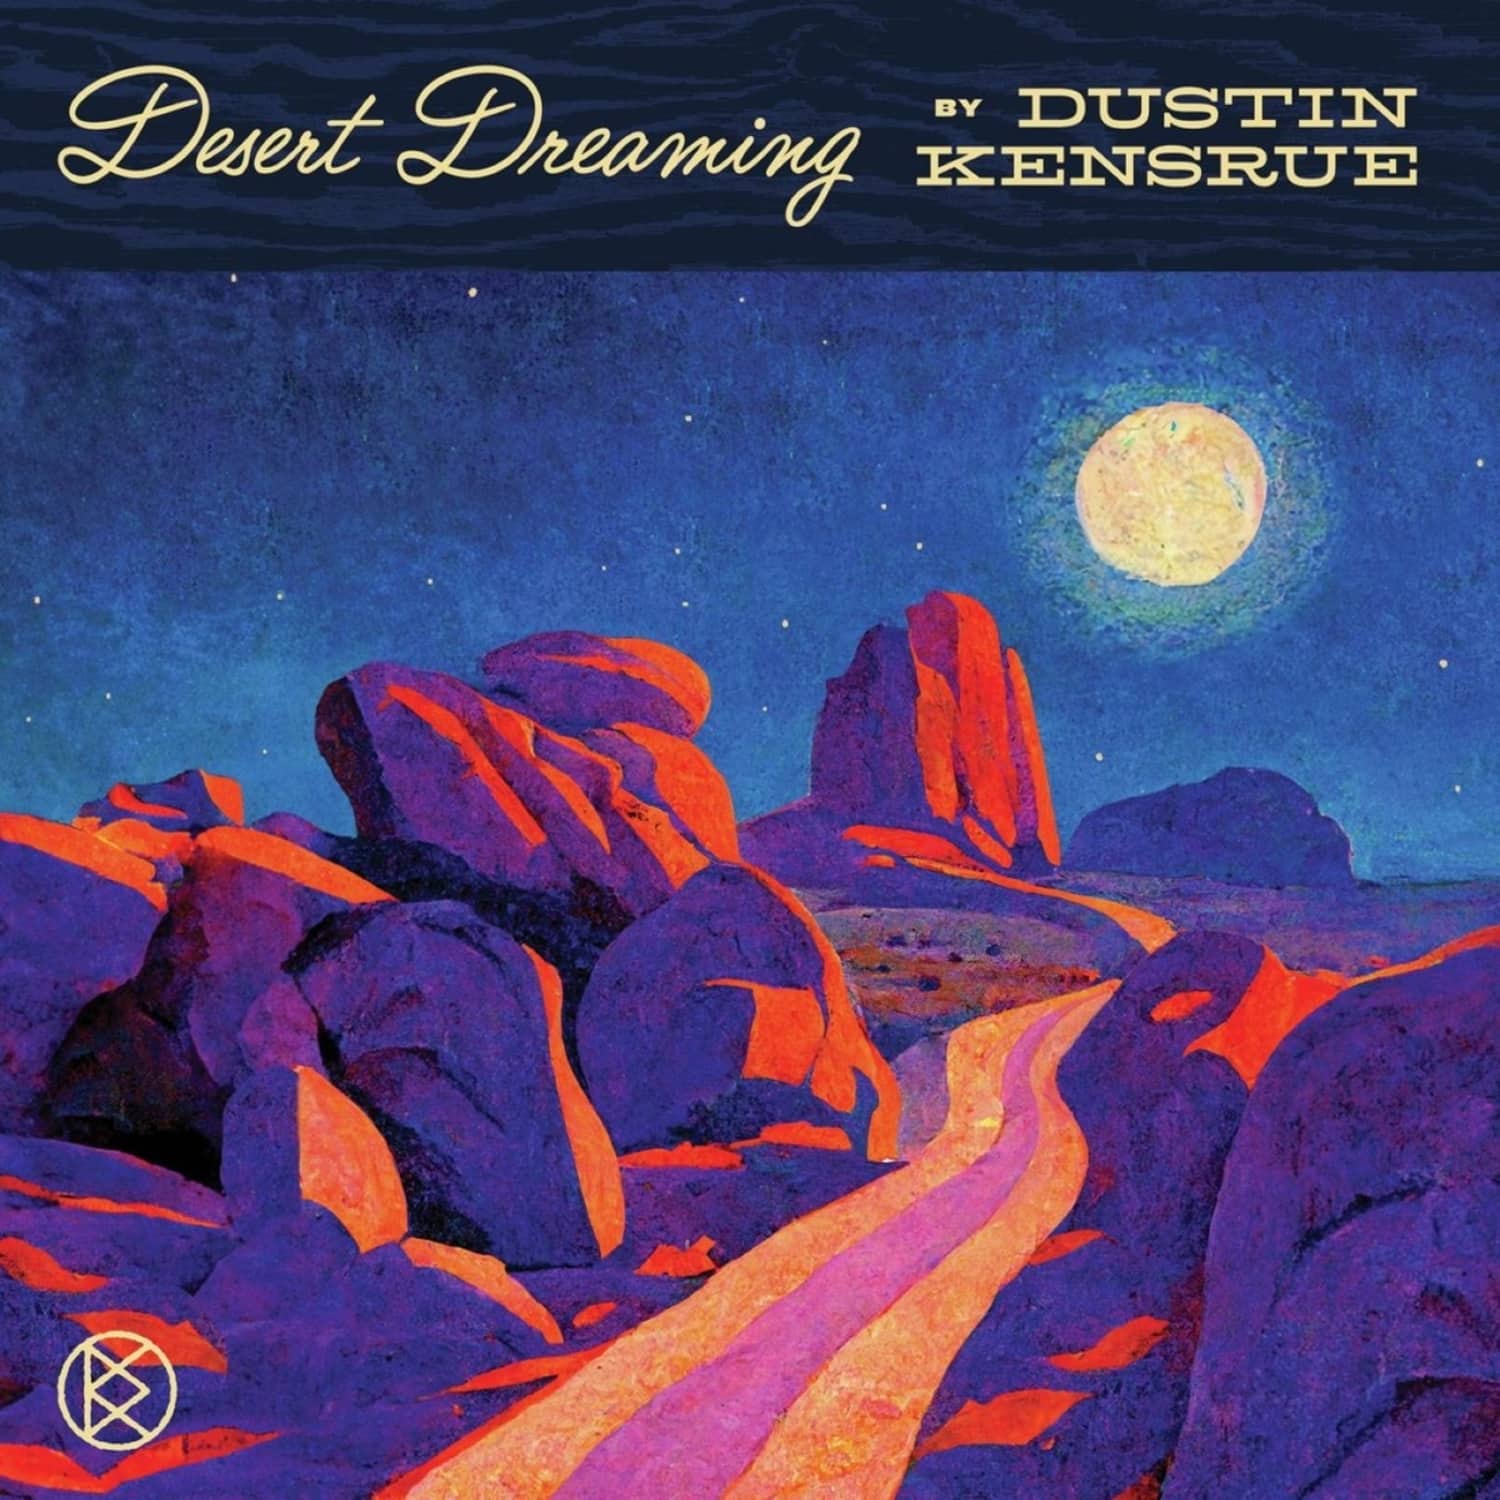 Dustin Kensrue - DESERT DREAMING 